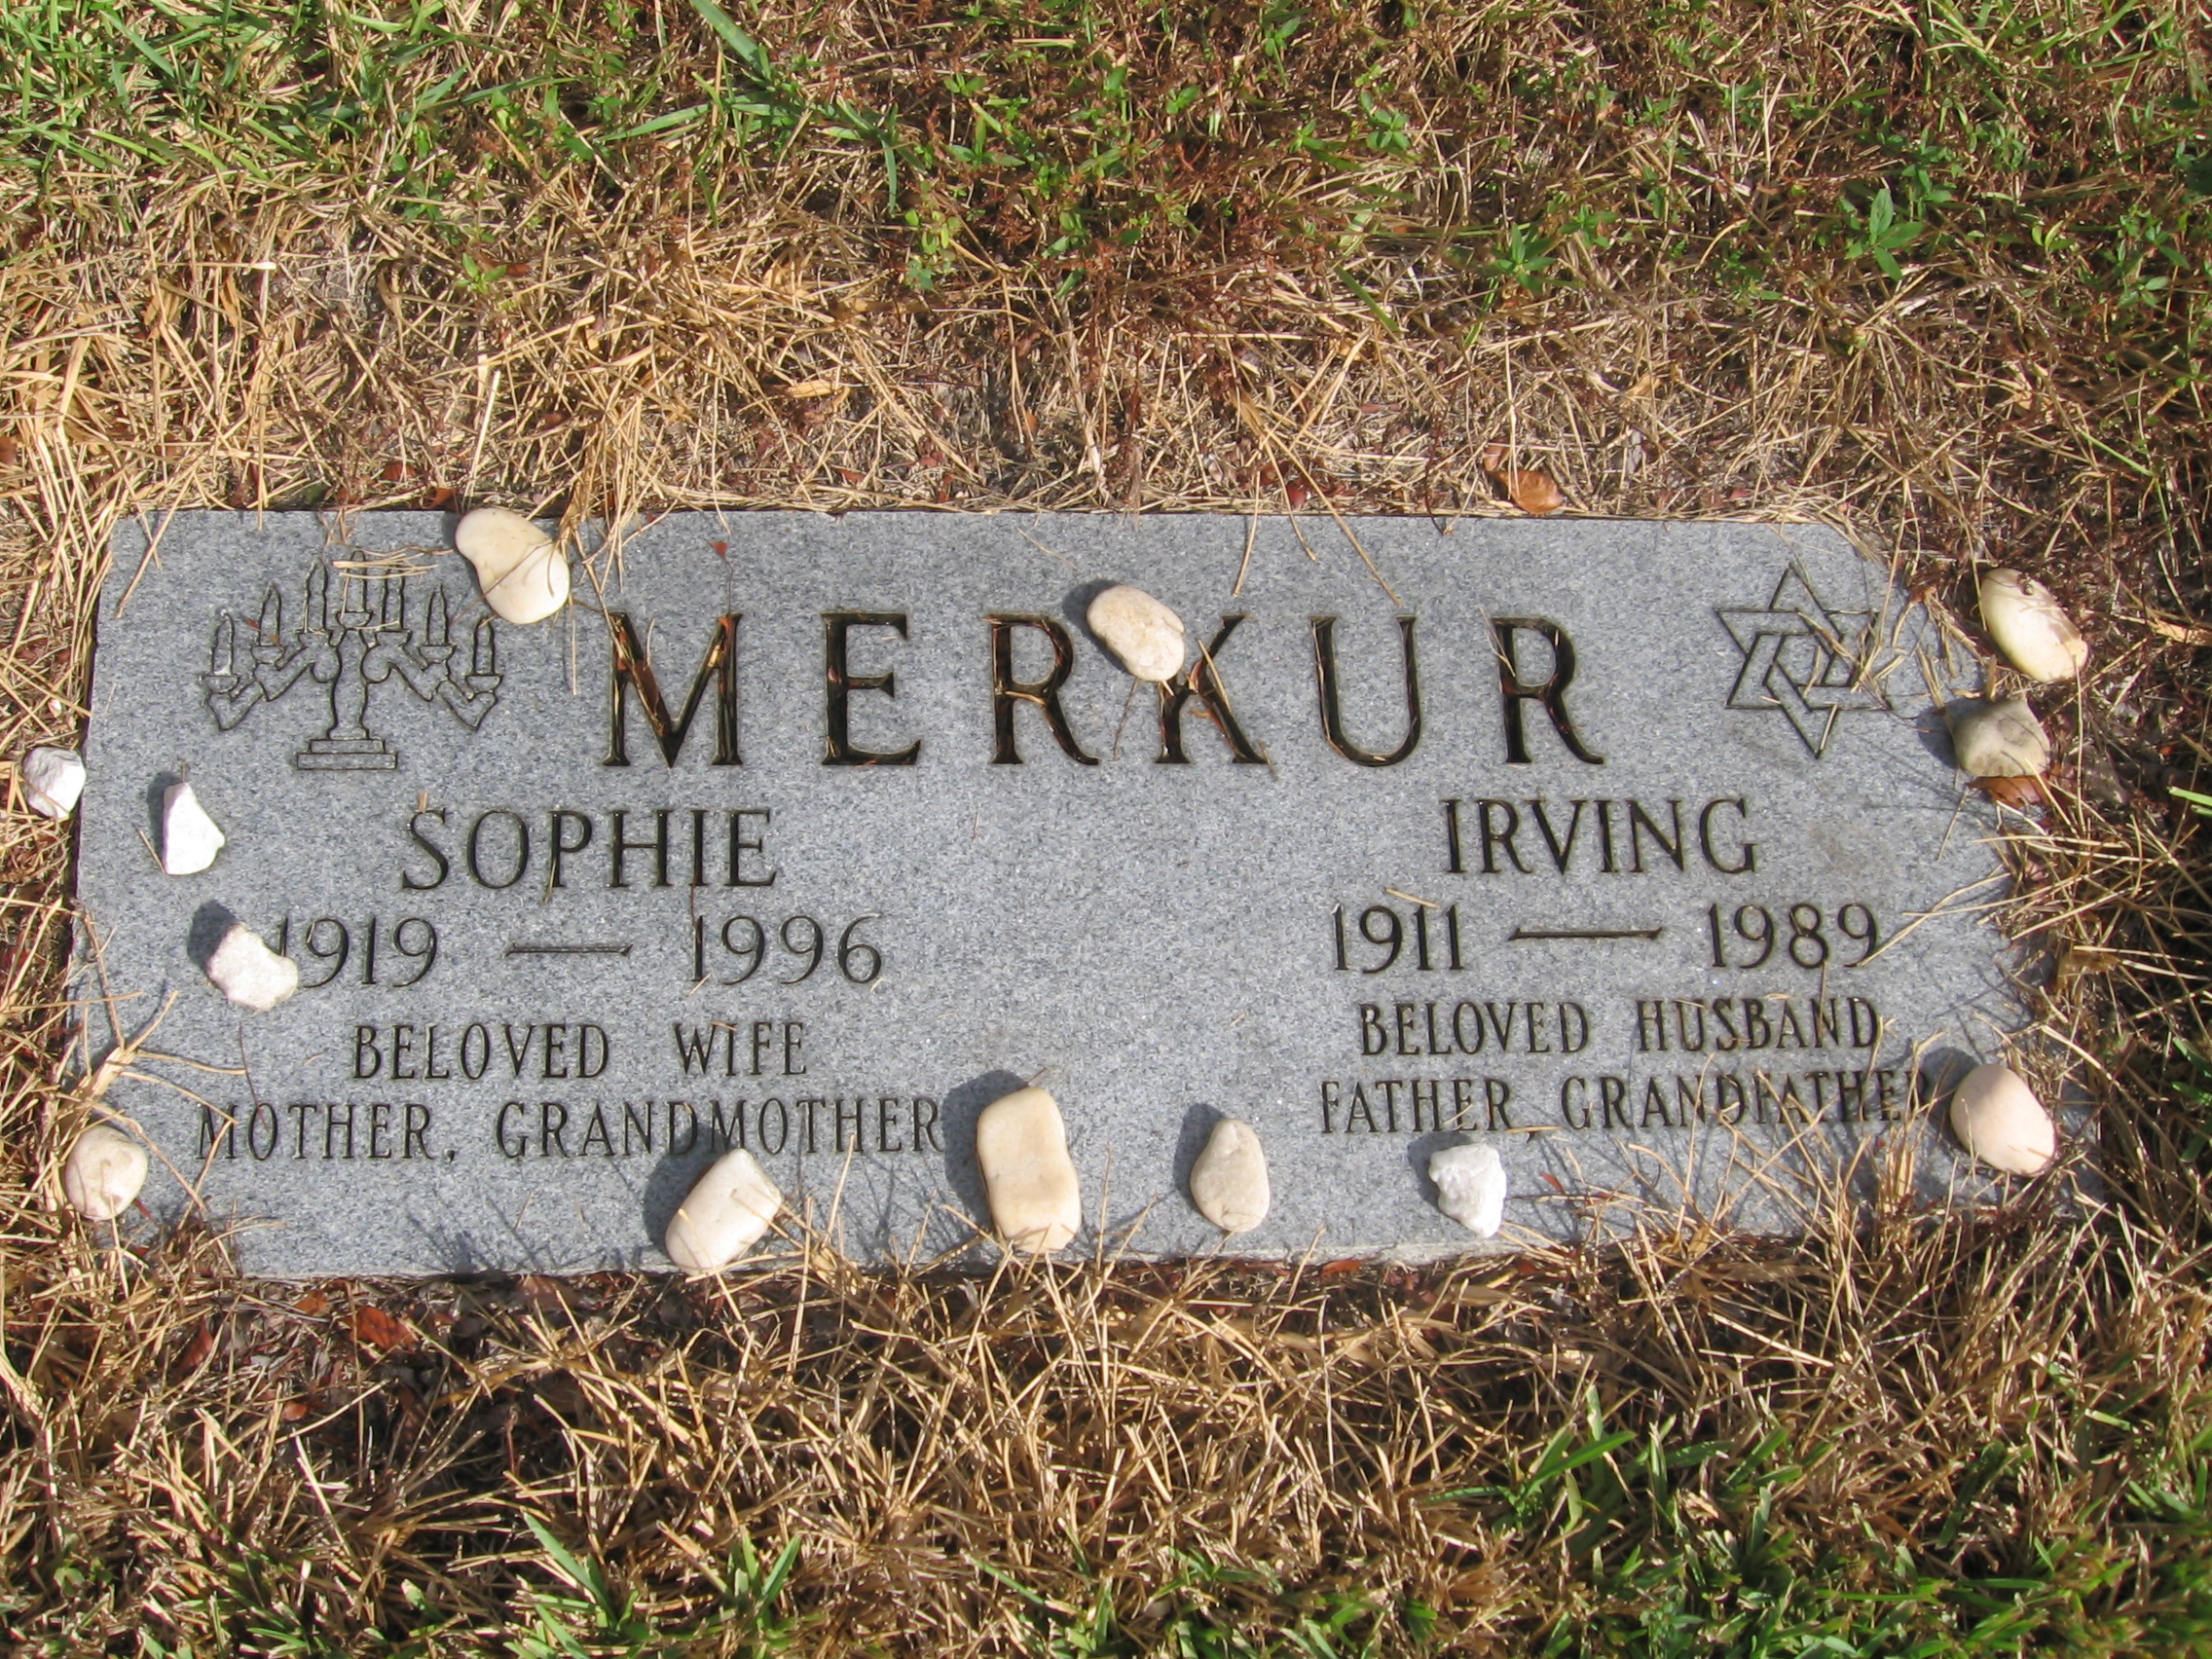 Sophie Merkur